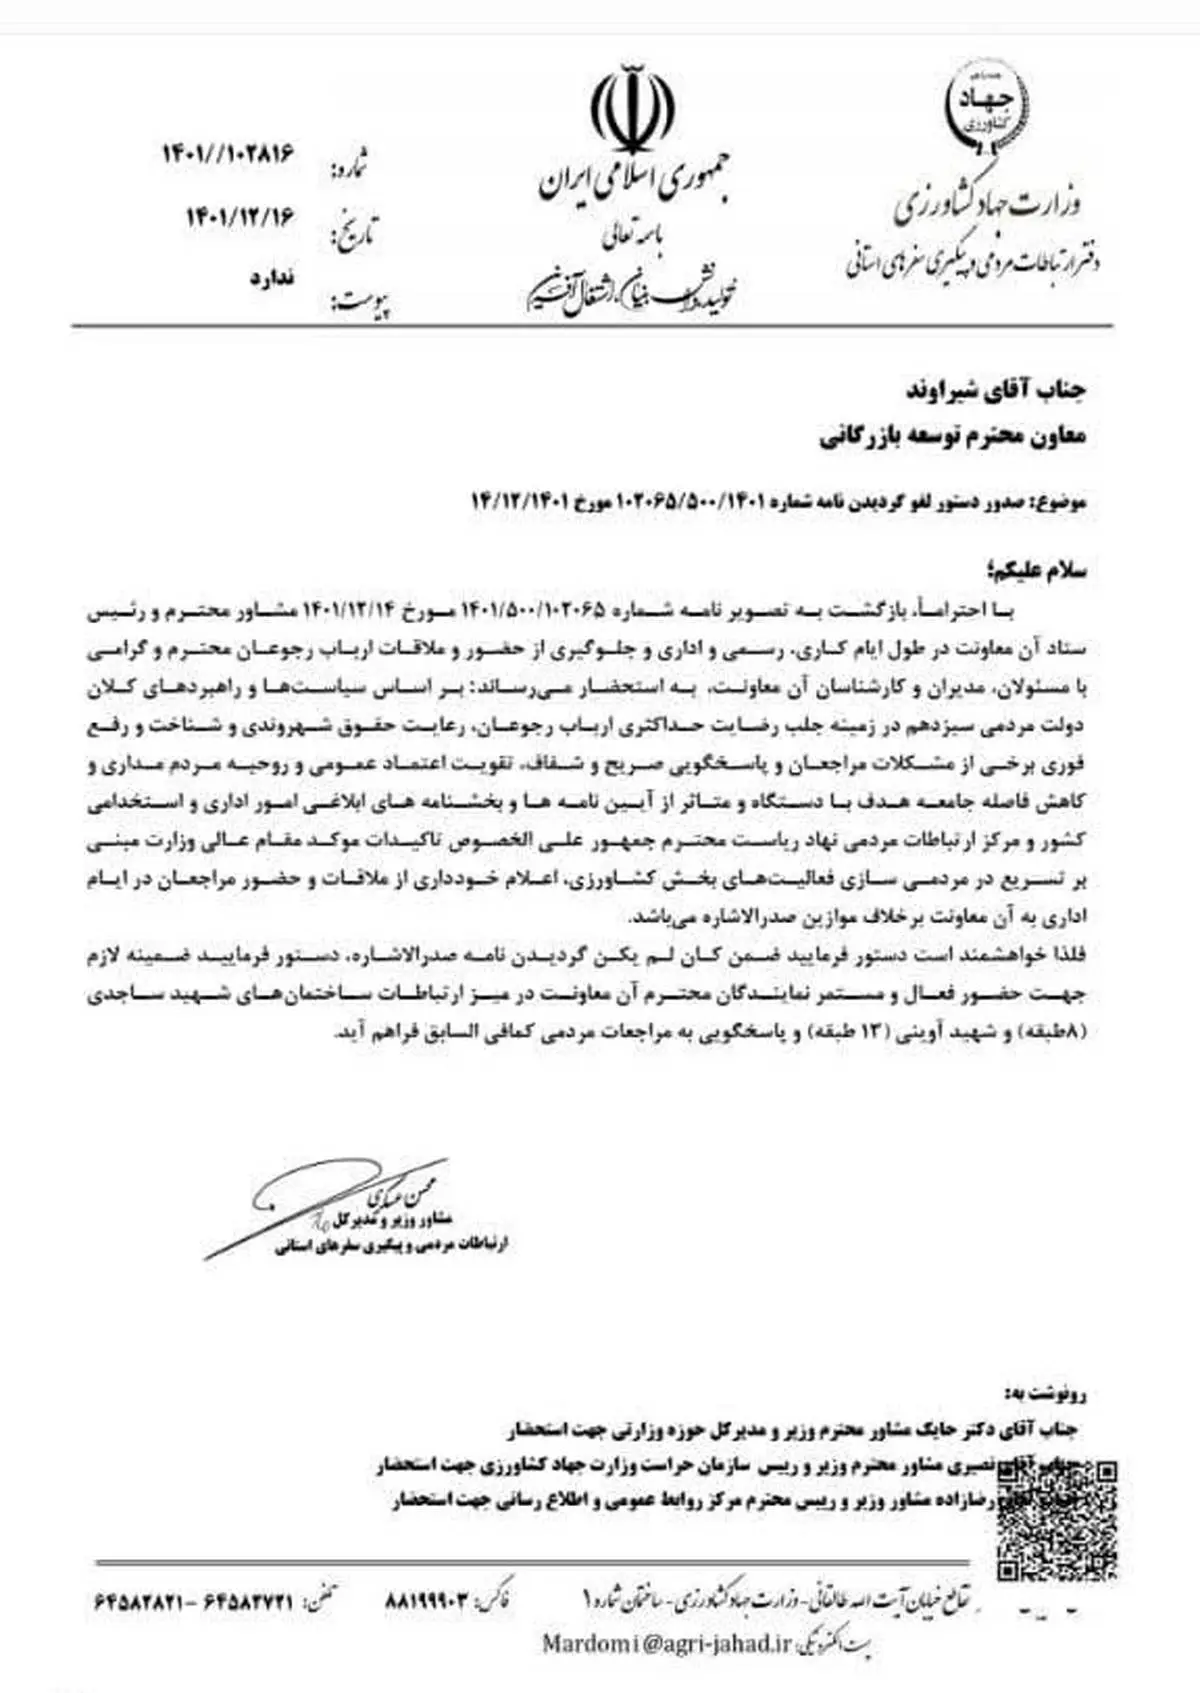 وزارت جهادکشاورزی خبر ممنوعیت ورود ارباب رجوع به معاونت بازرگانی را تکذیب کرد